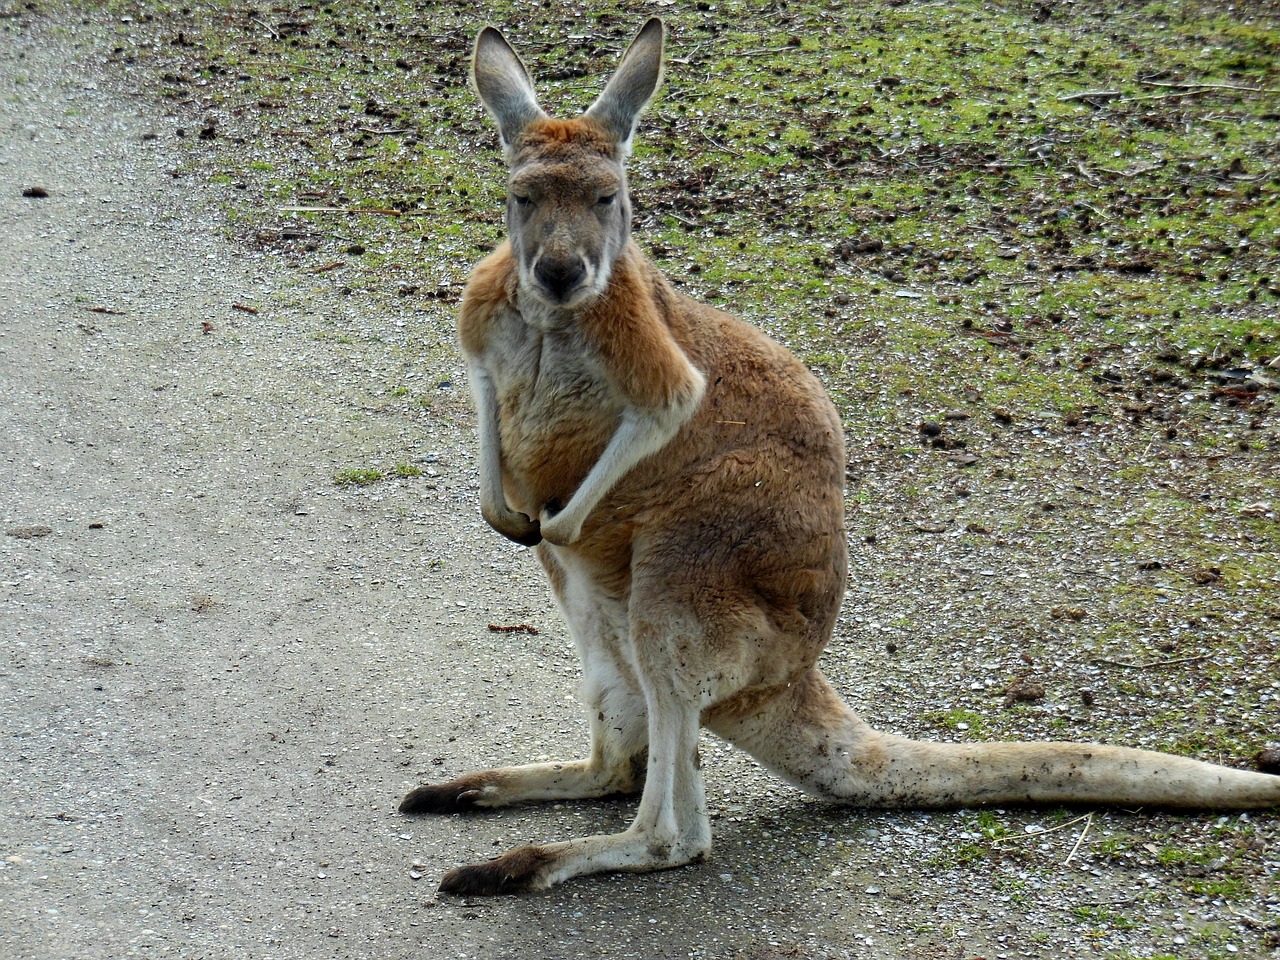 rode reuzenkangoeroe kangoeroe reuzenkangoeroe free photo